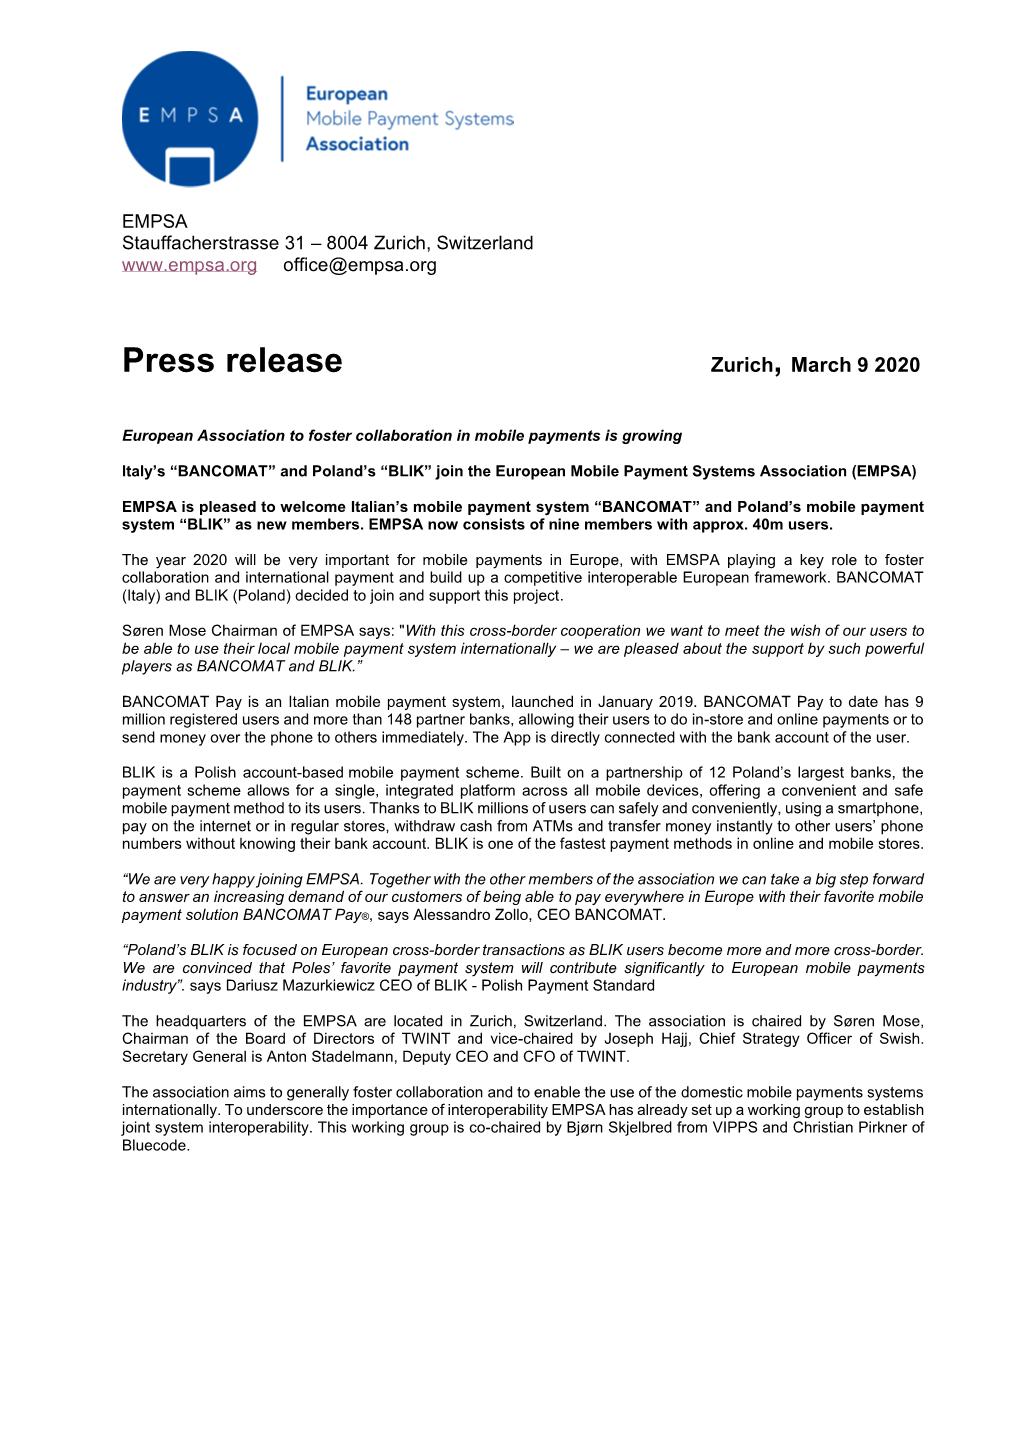 Press Release Zurich, March 9 2020